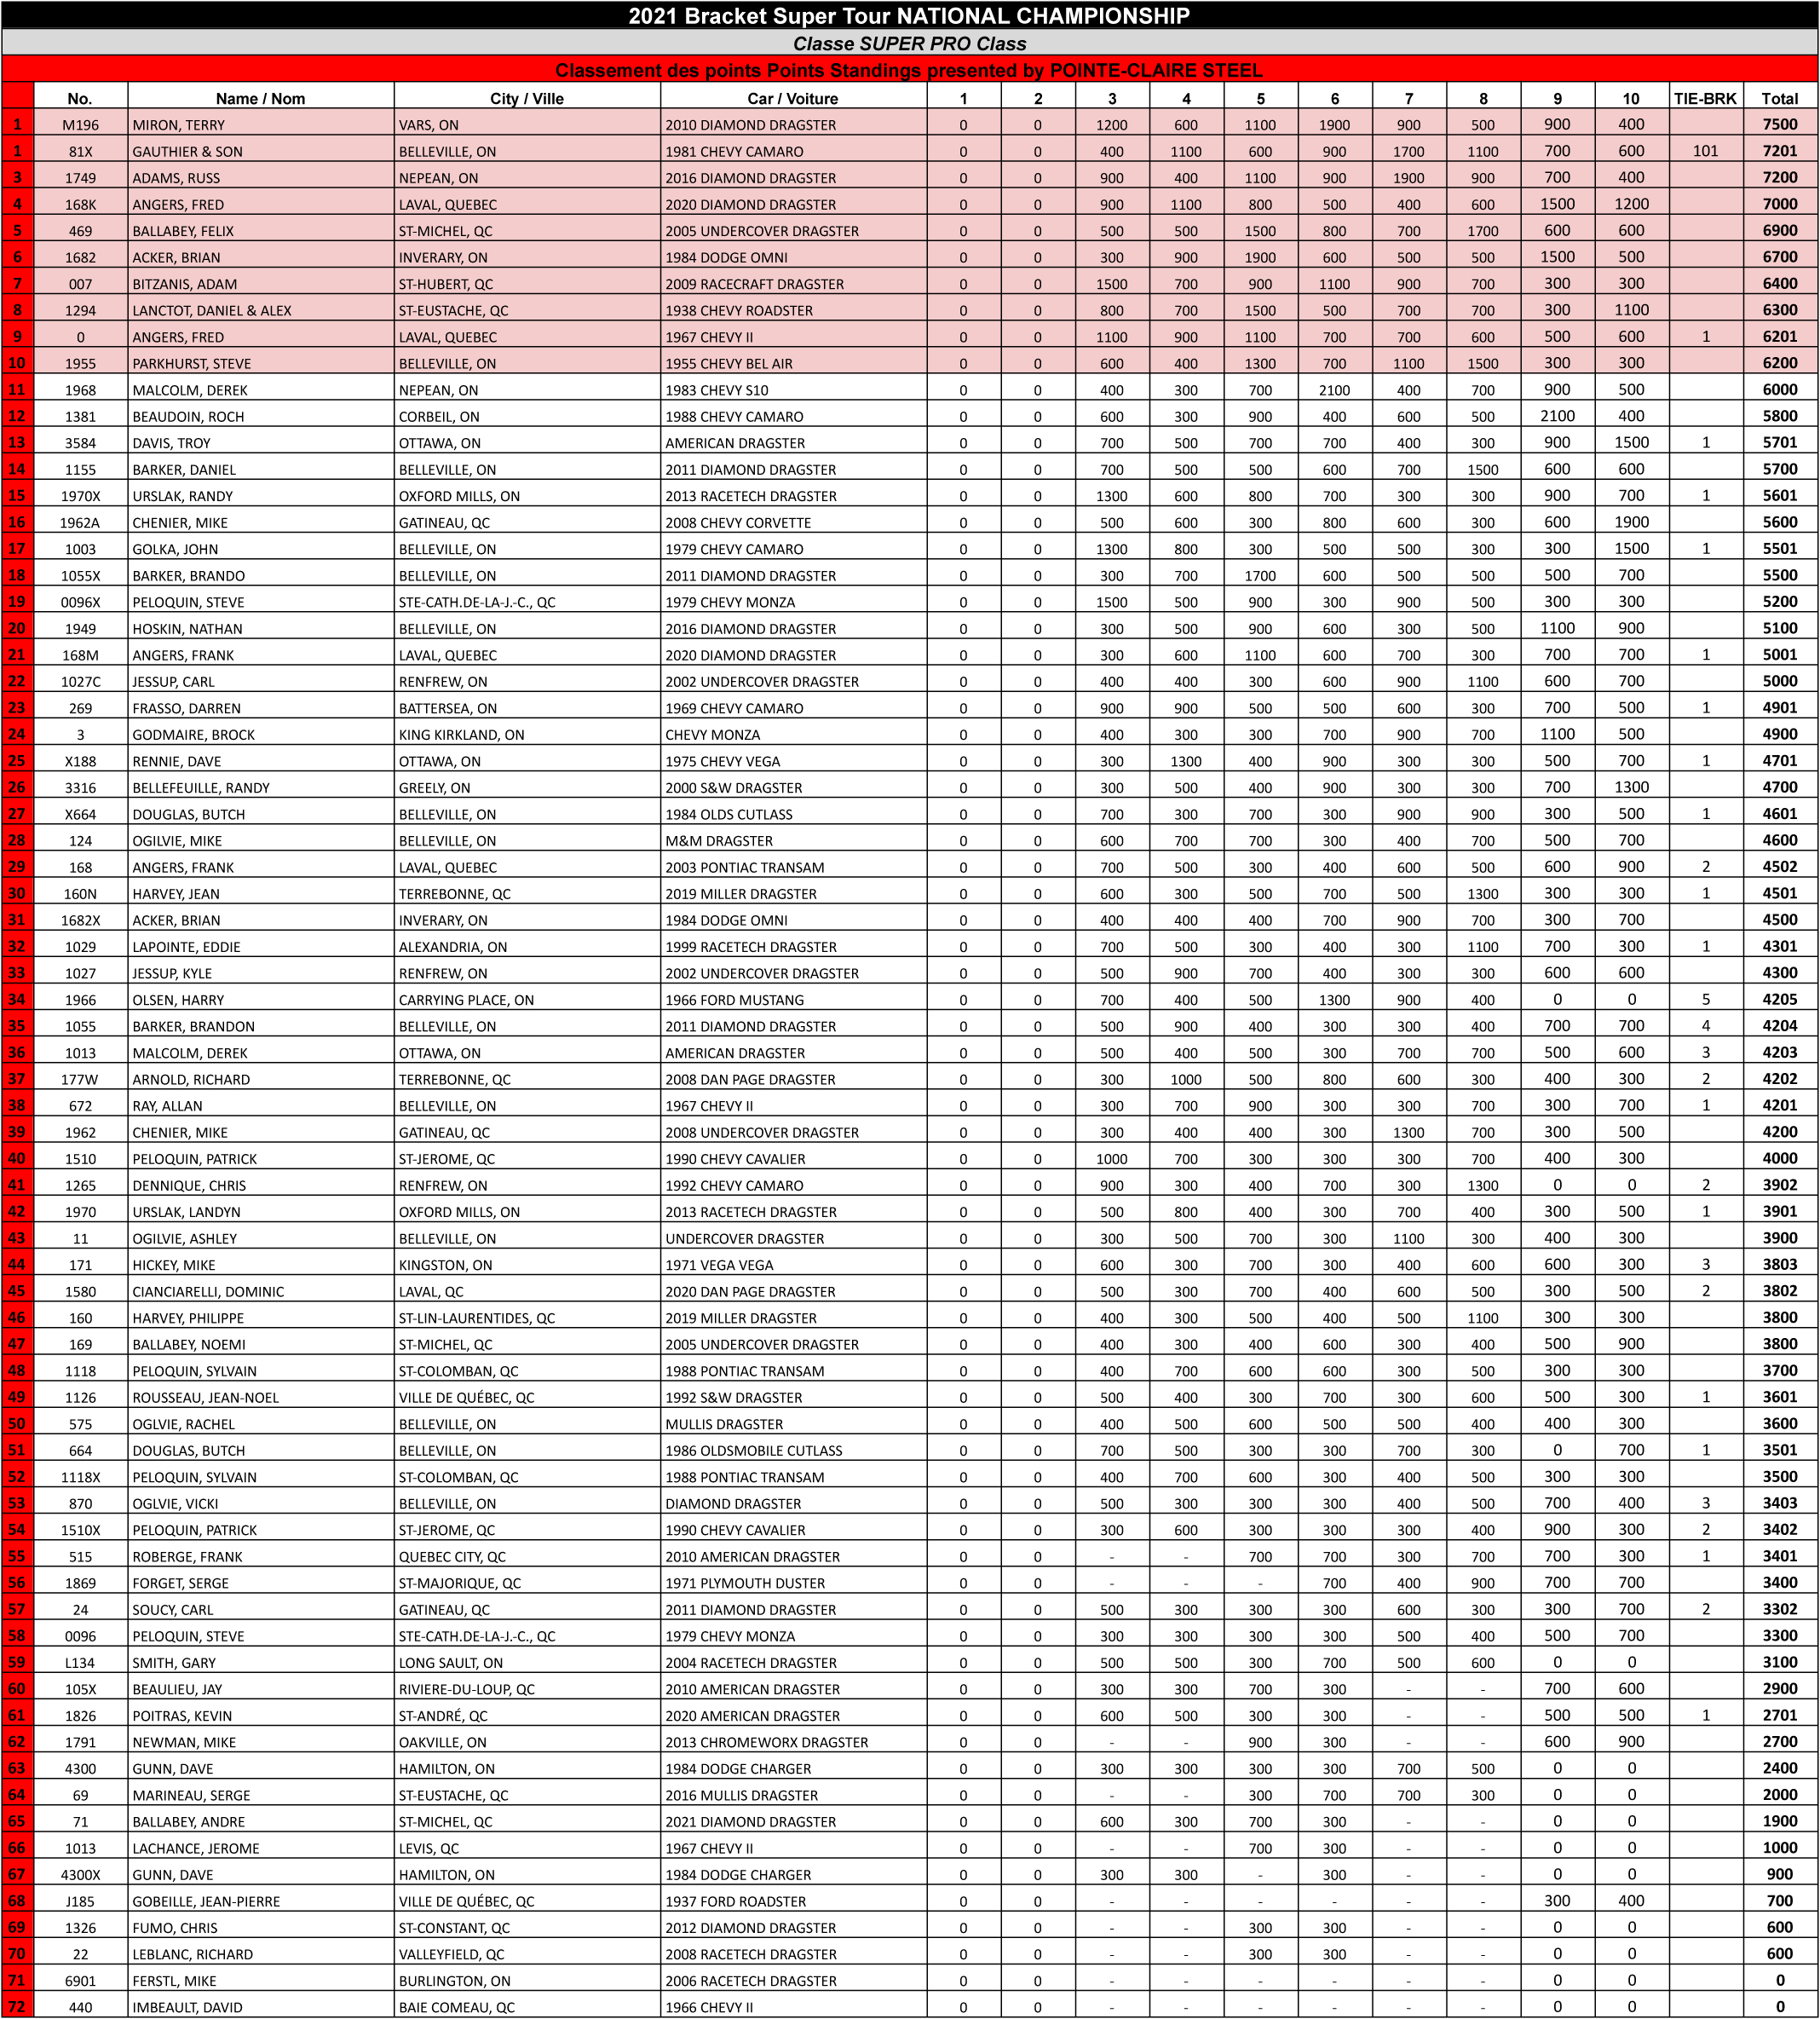 Bracket Super Tour - 2021 Super Pro Points Standings FINAL